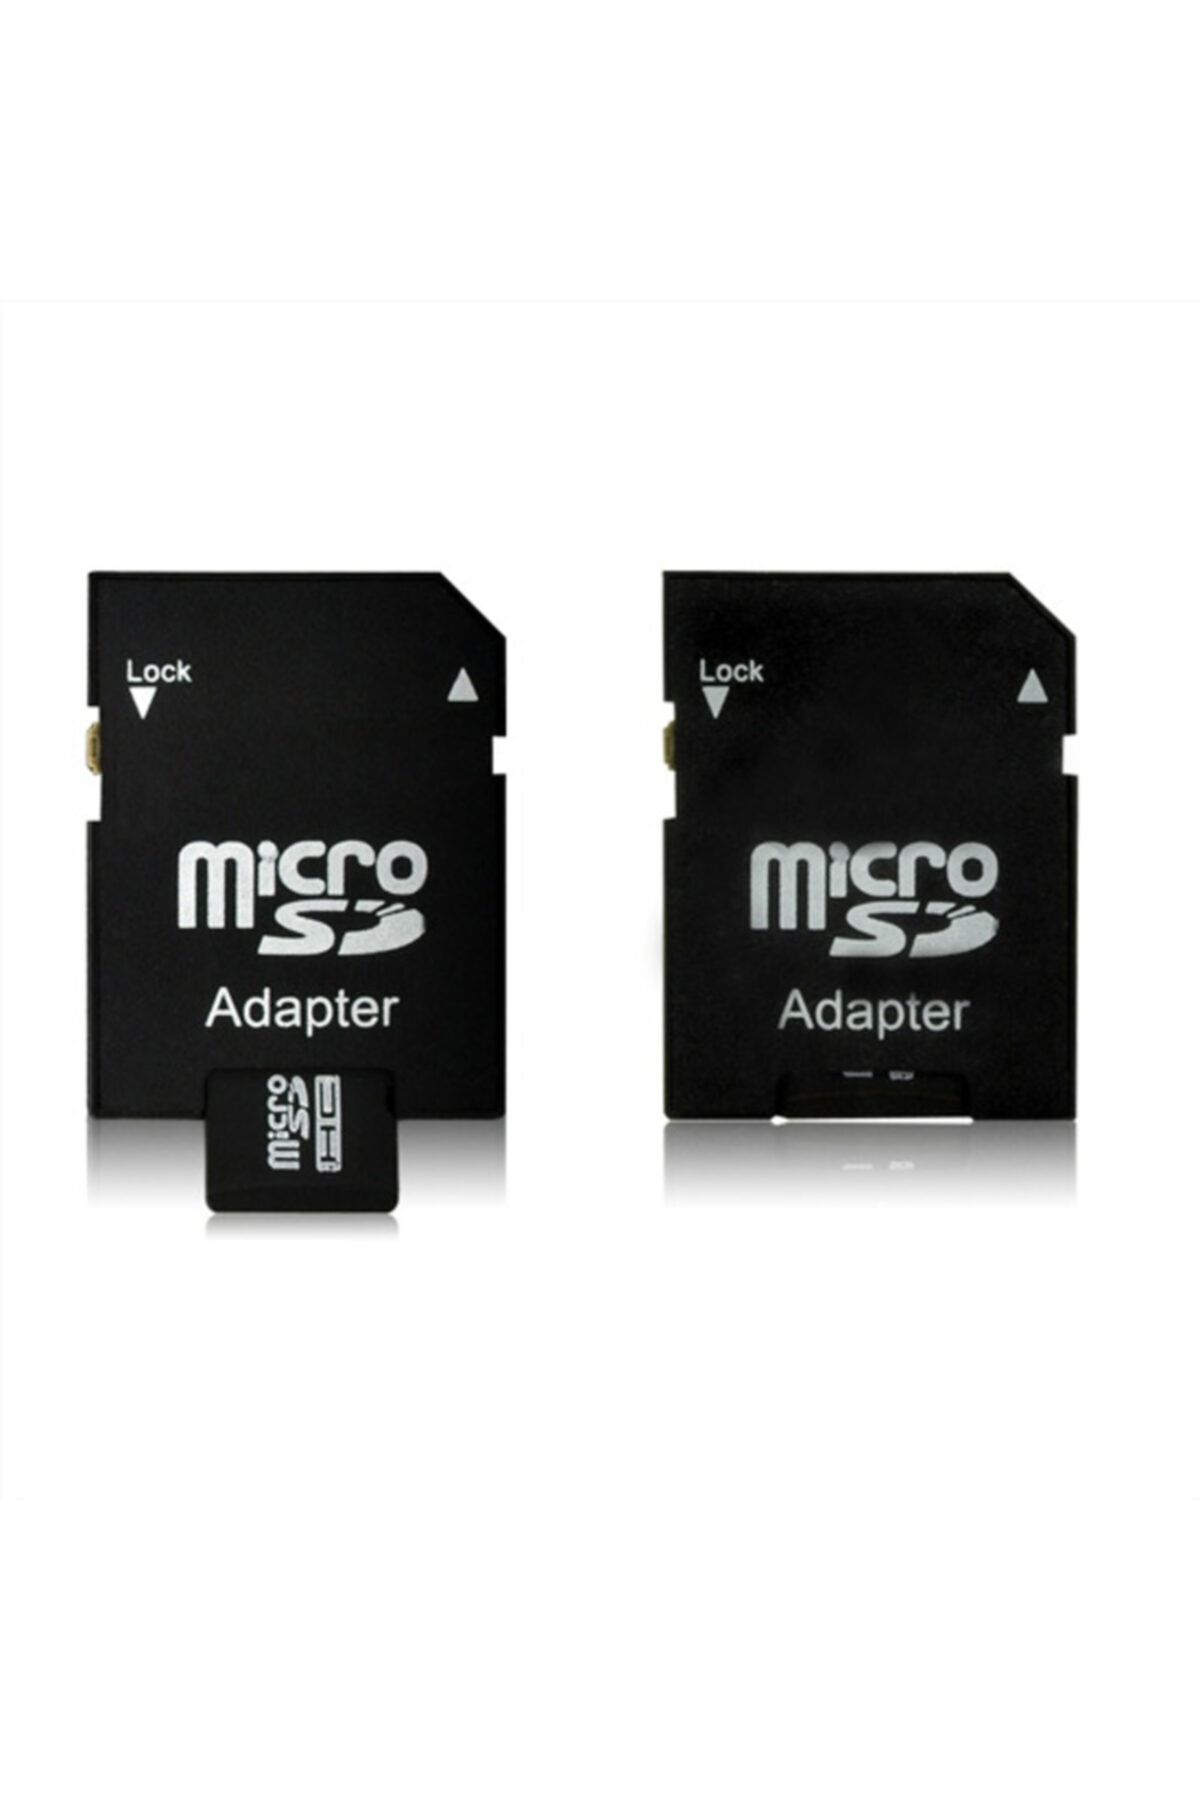 STTEKNOLOJI 8 Gb Micro Sd Card Hafıza Kartı Adaptörlü